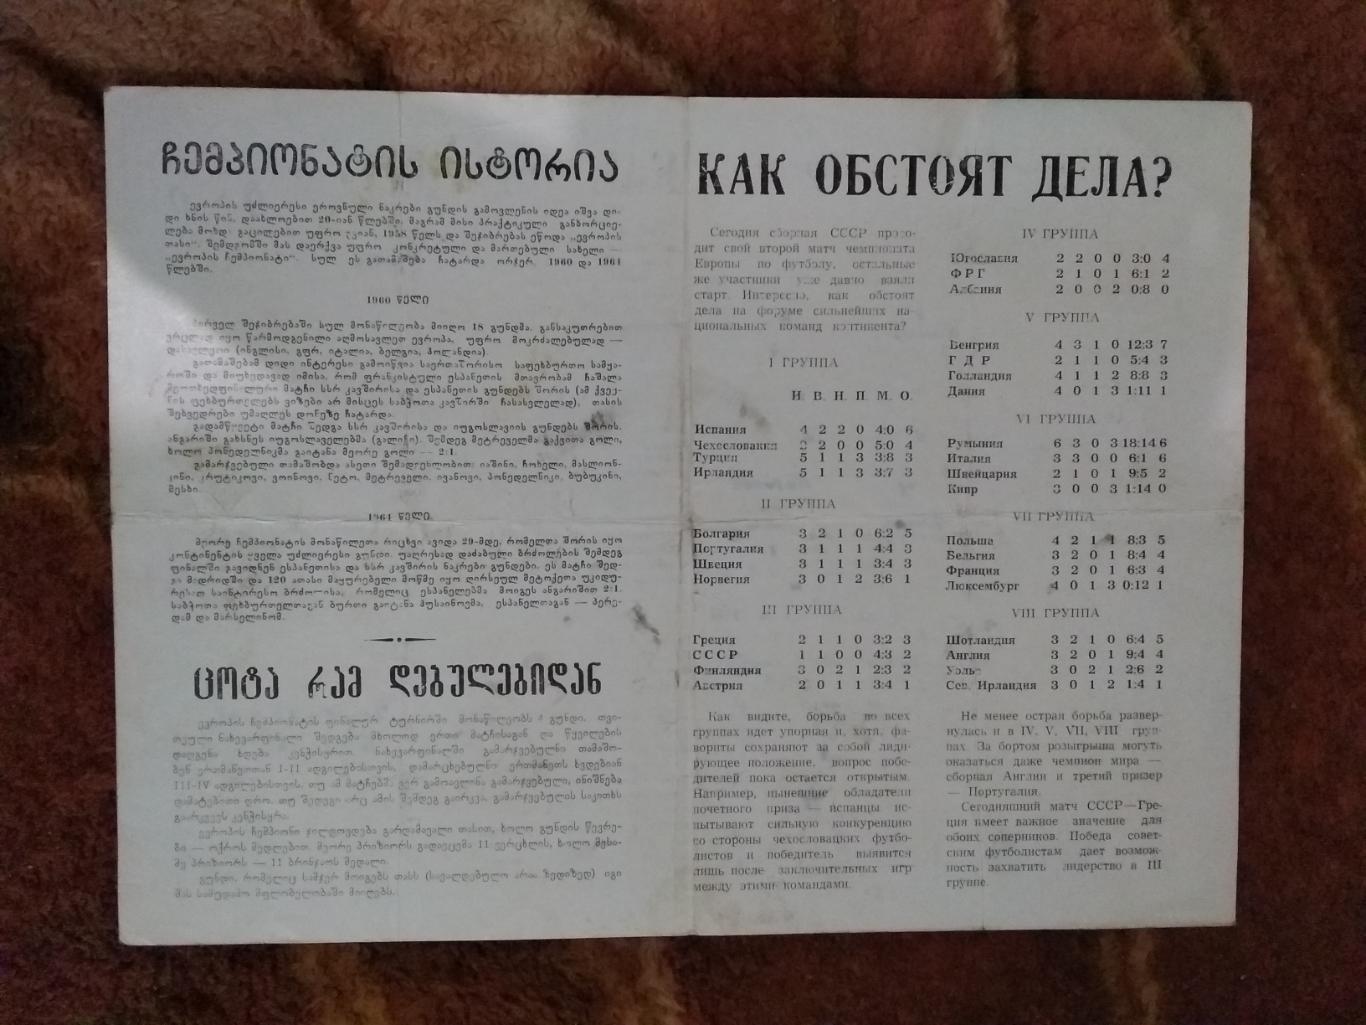 СССР - Греция.ОЧЕ 16.07.1967 г.(бронь). 1